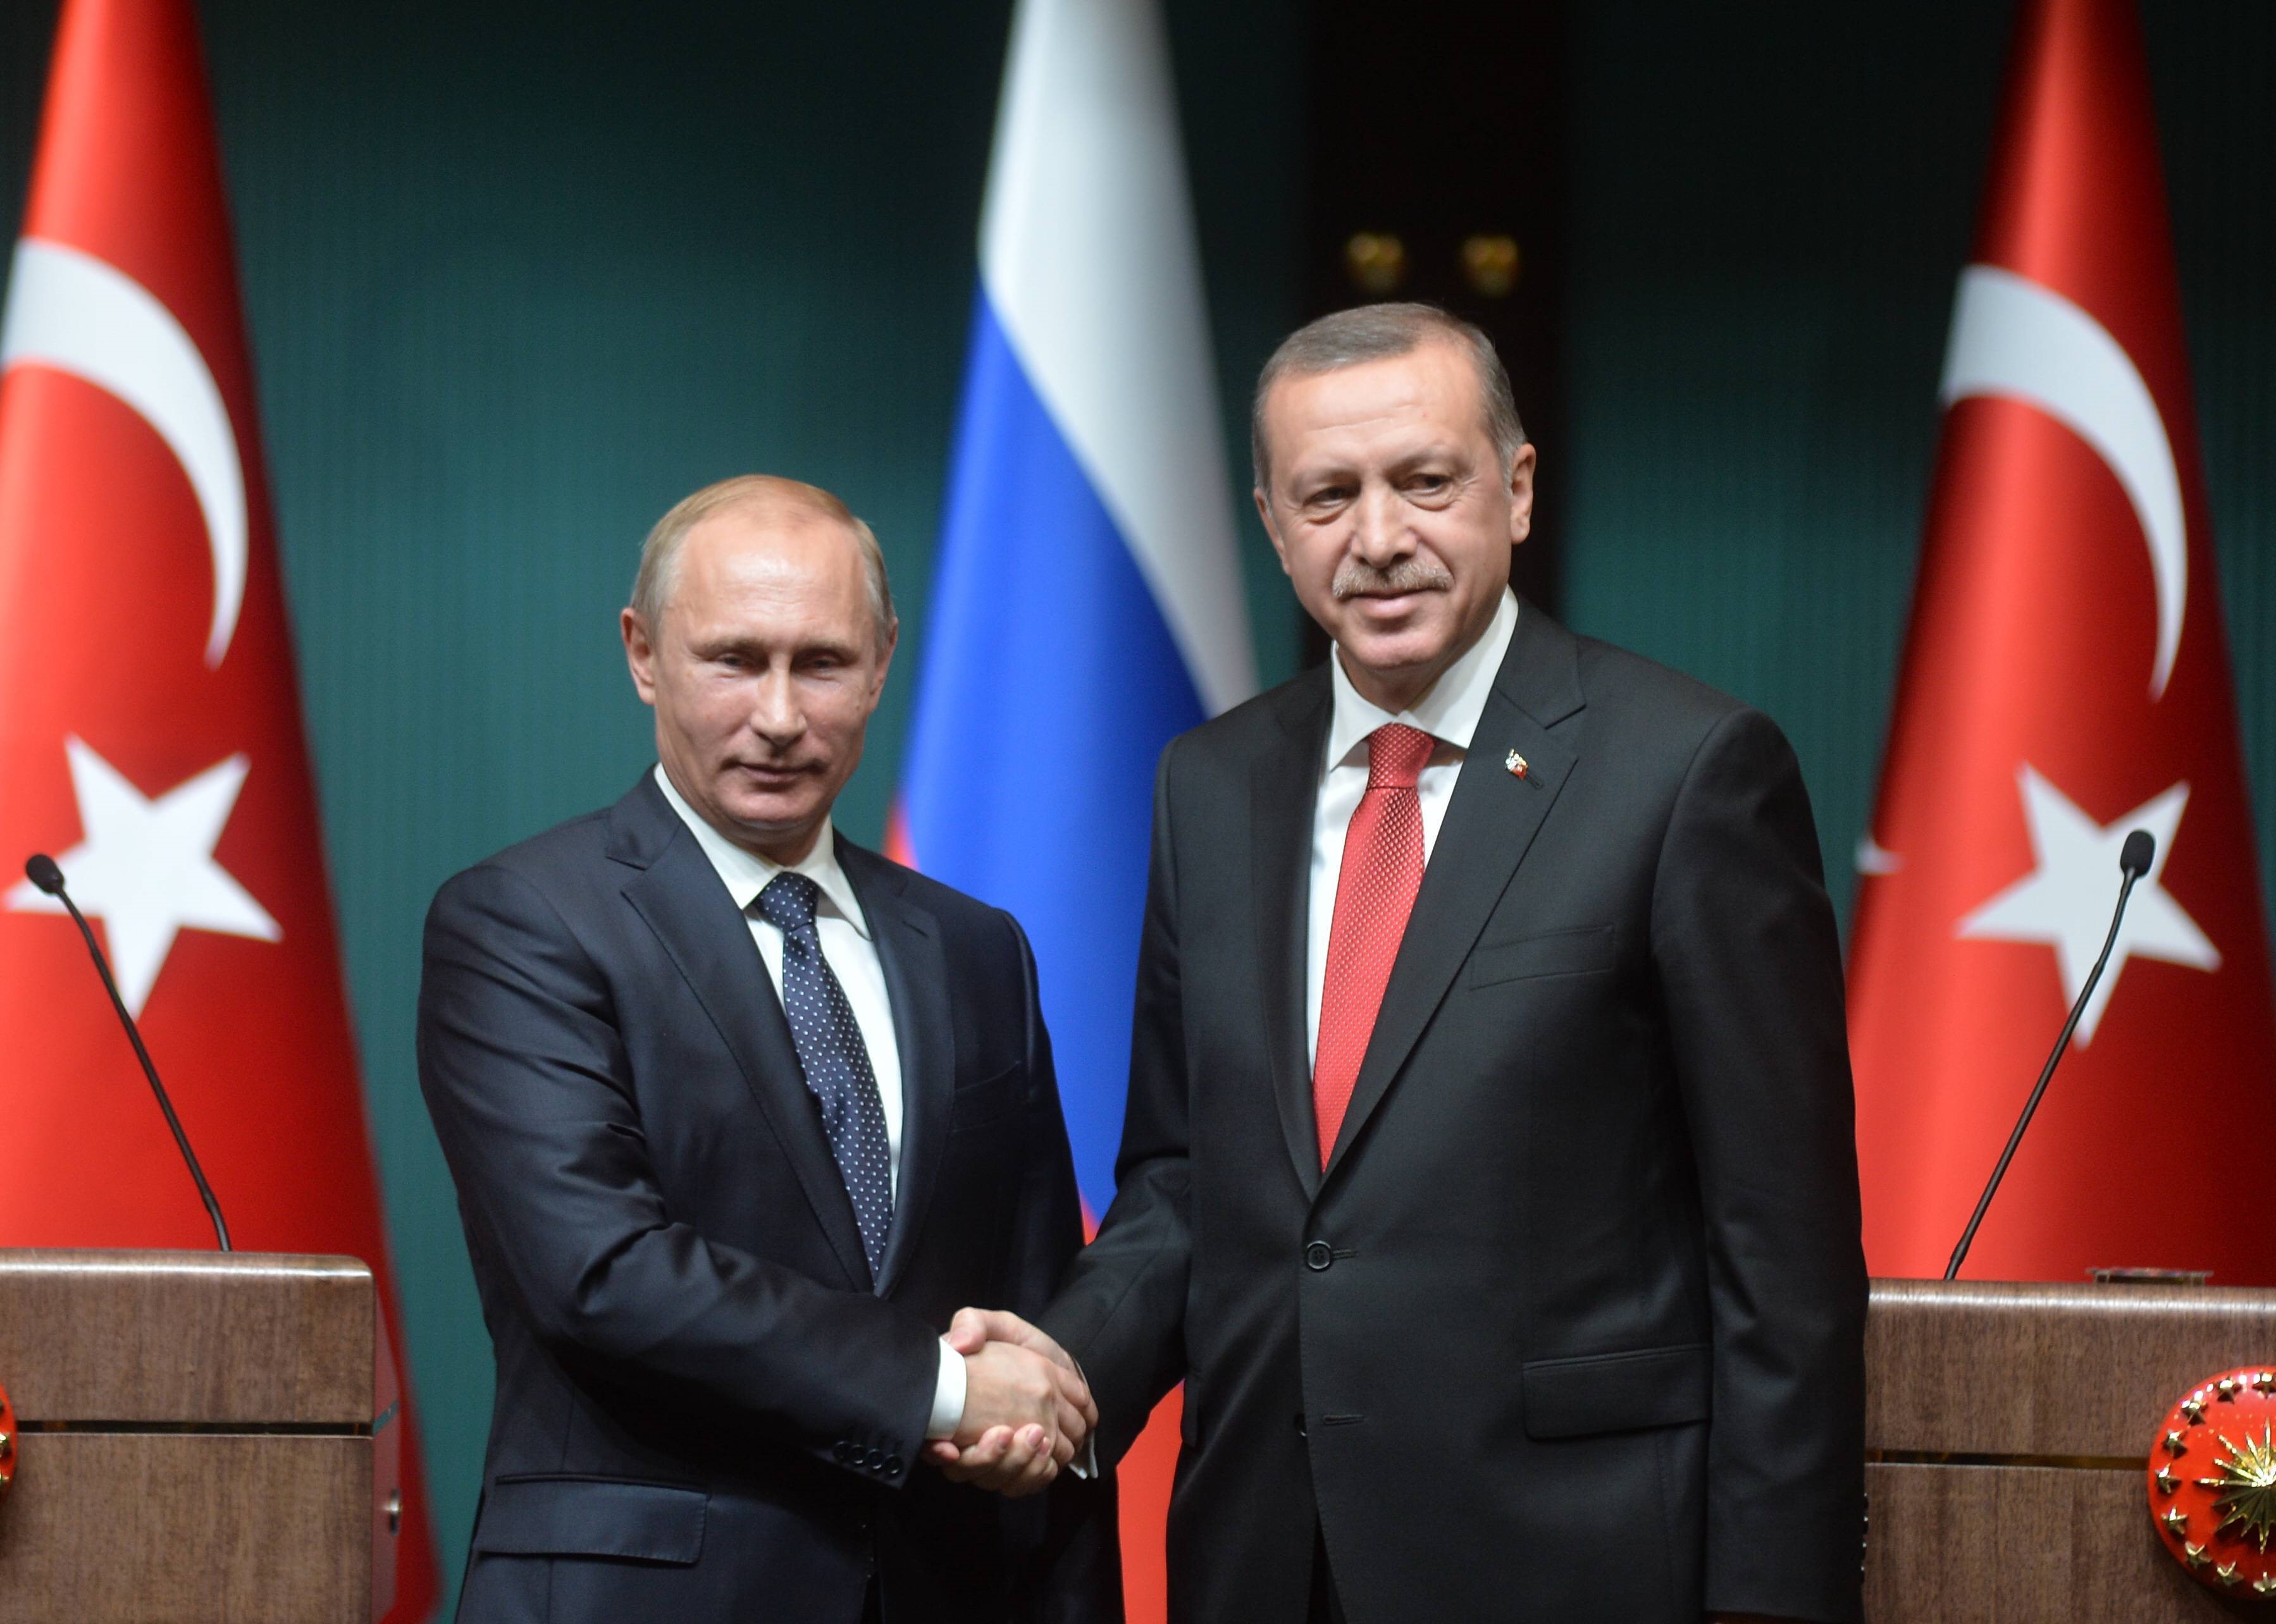 Erdogan baut eigene "Wagner-Söldner" auf! Privatarmee “Bekcis“ soll noch größer werden - was plant der türkische Präsident?